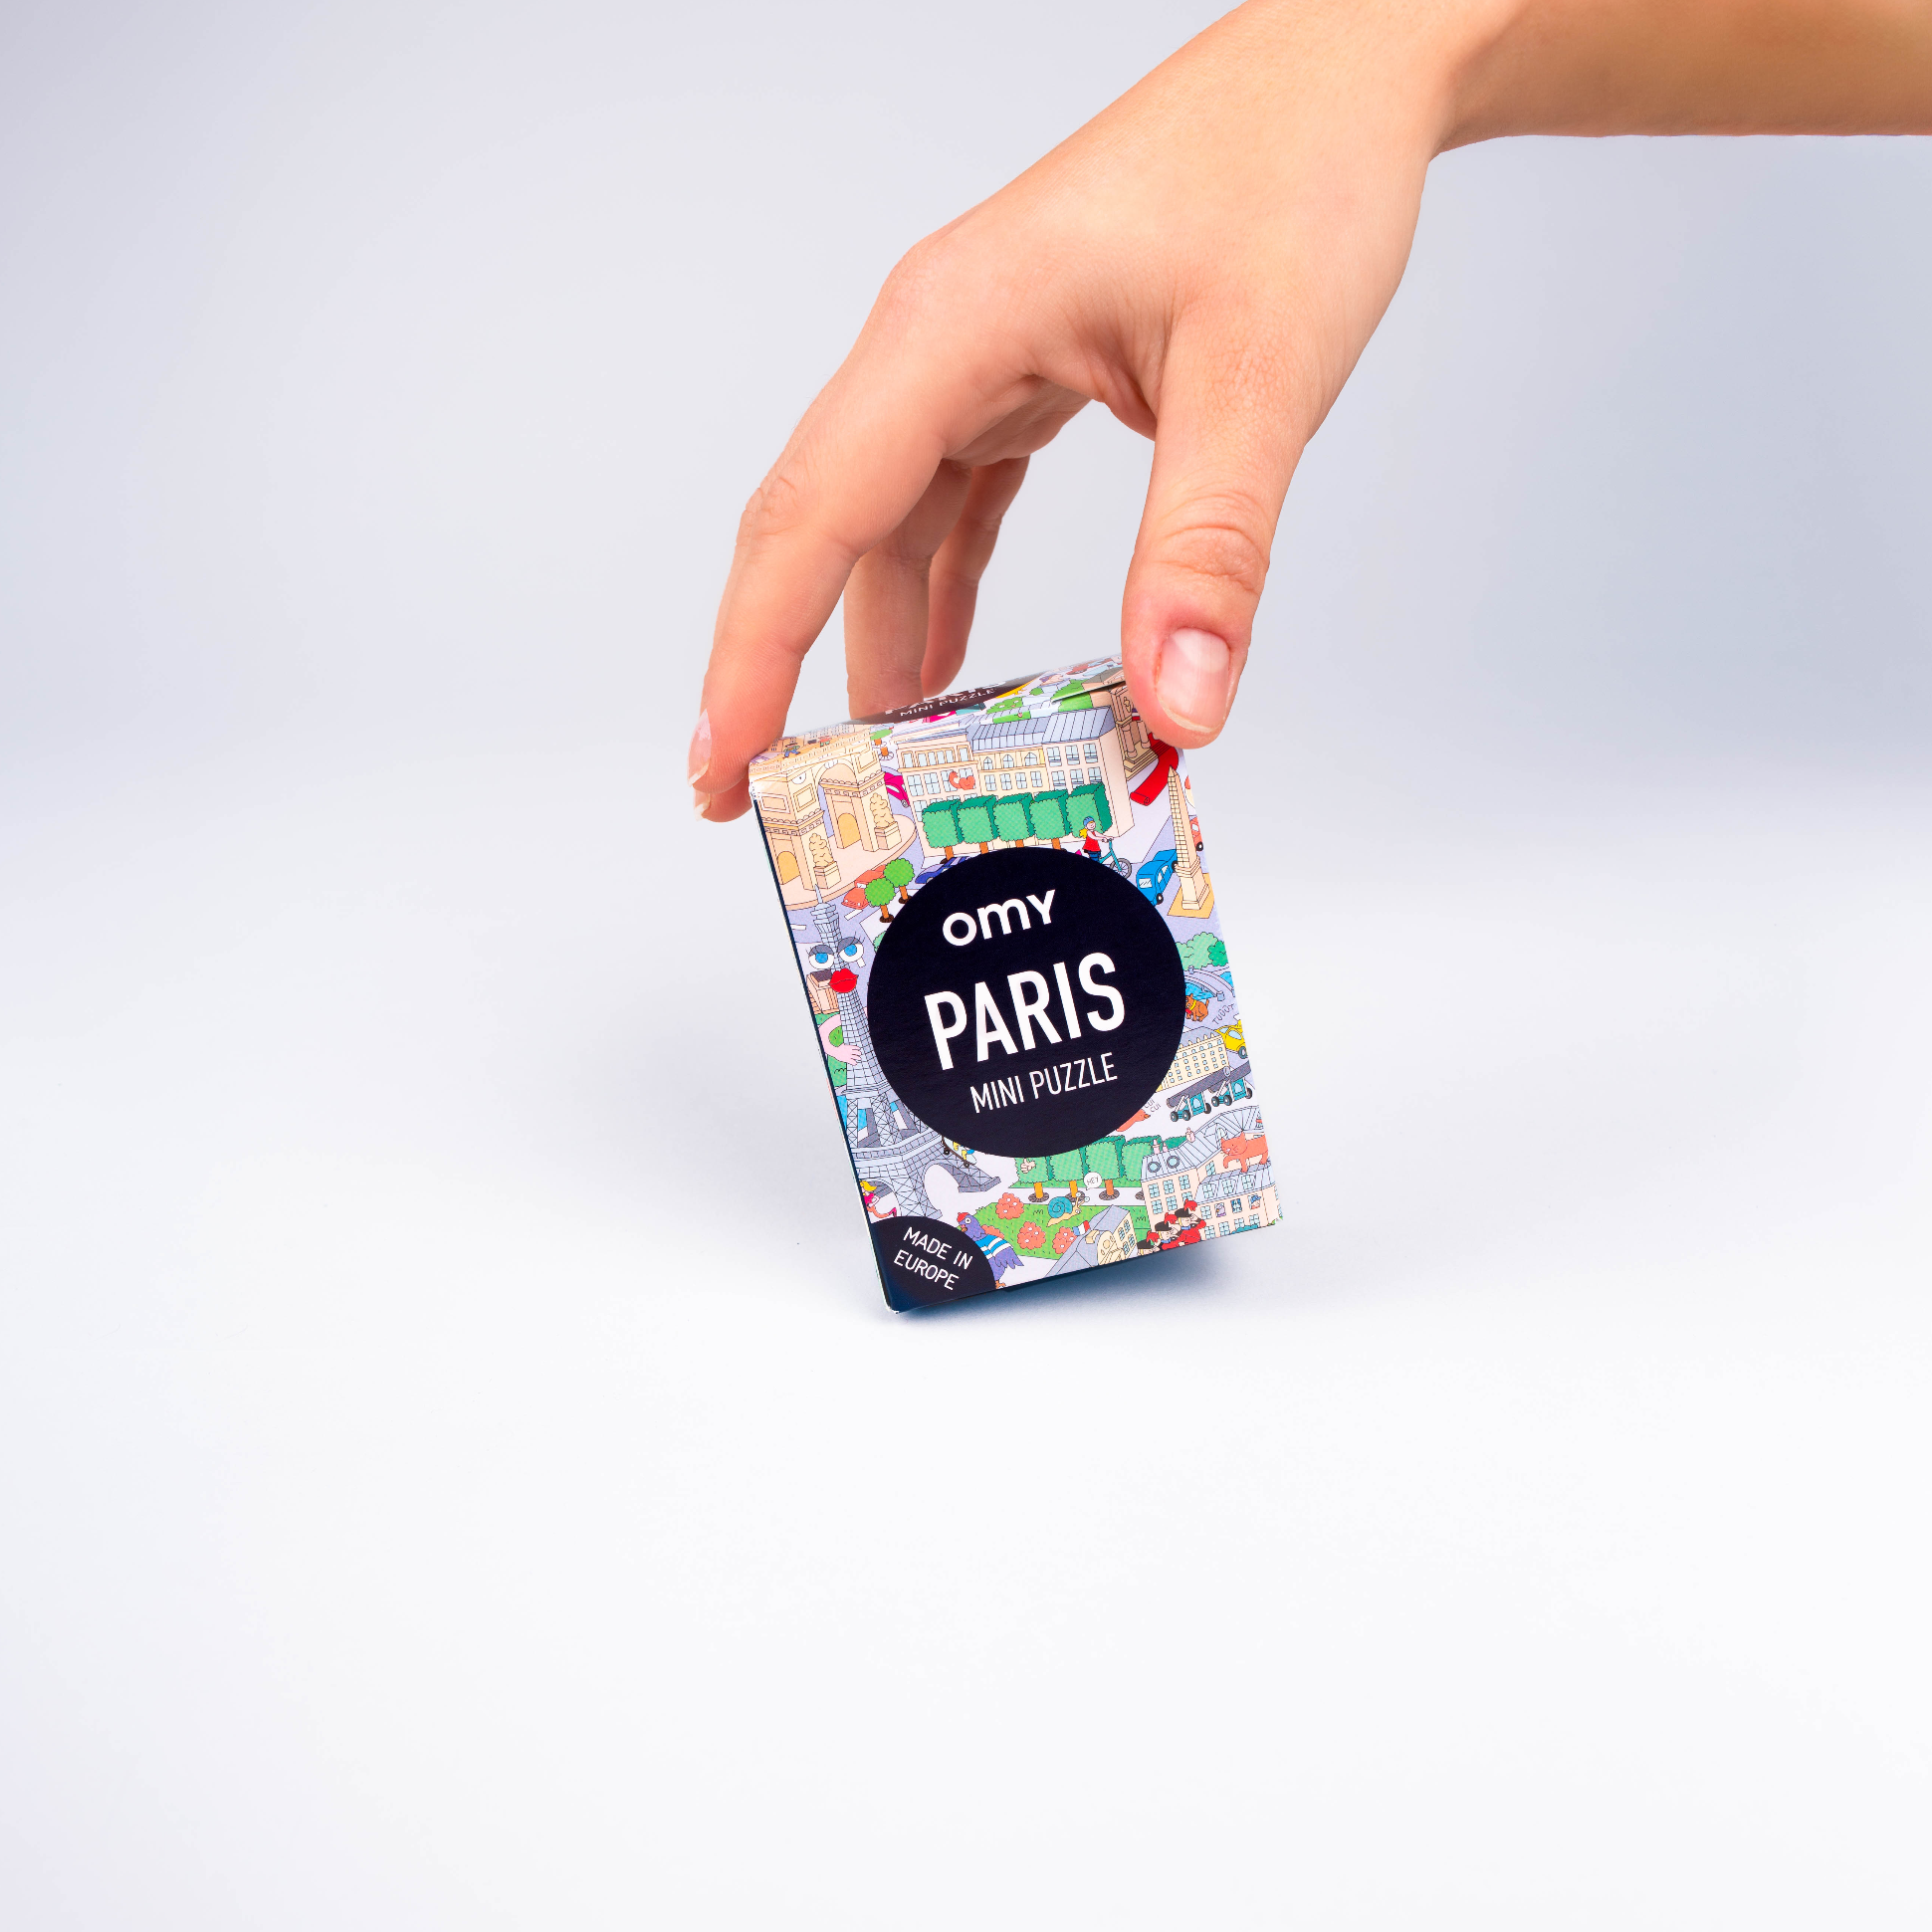 Paper toys 3D City - ville pop-up à construire Omy - Le petit Souk